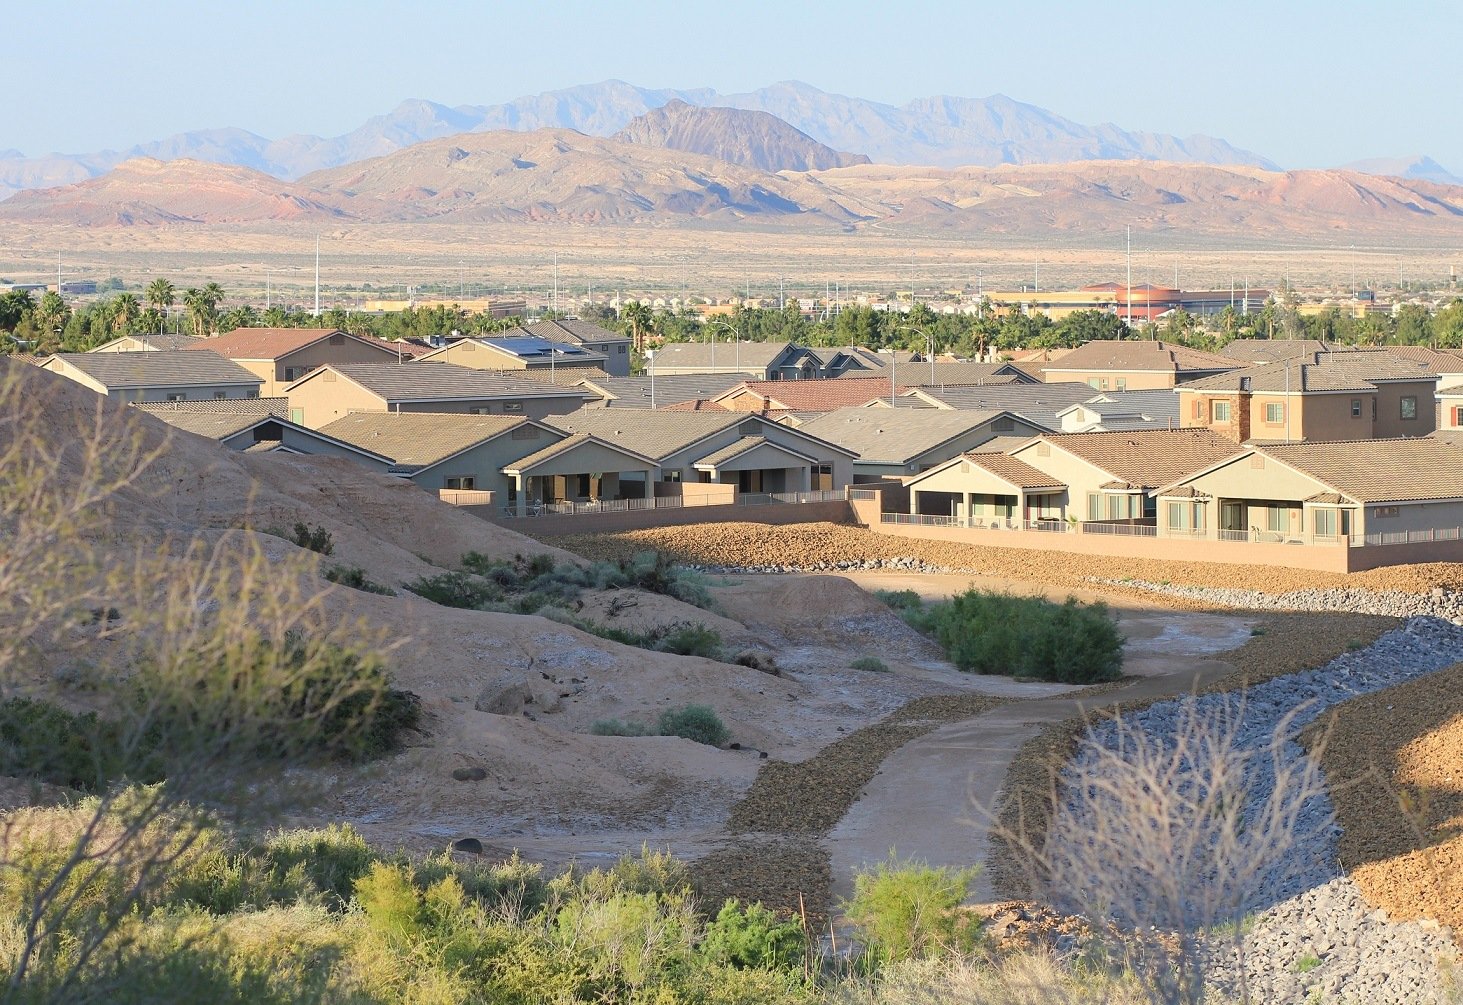 Houses in the desert Henderson, Nevada